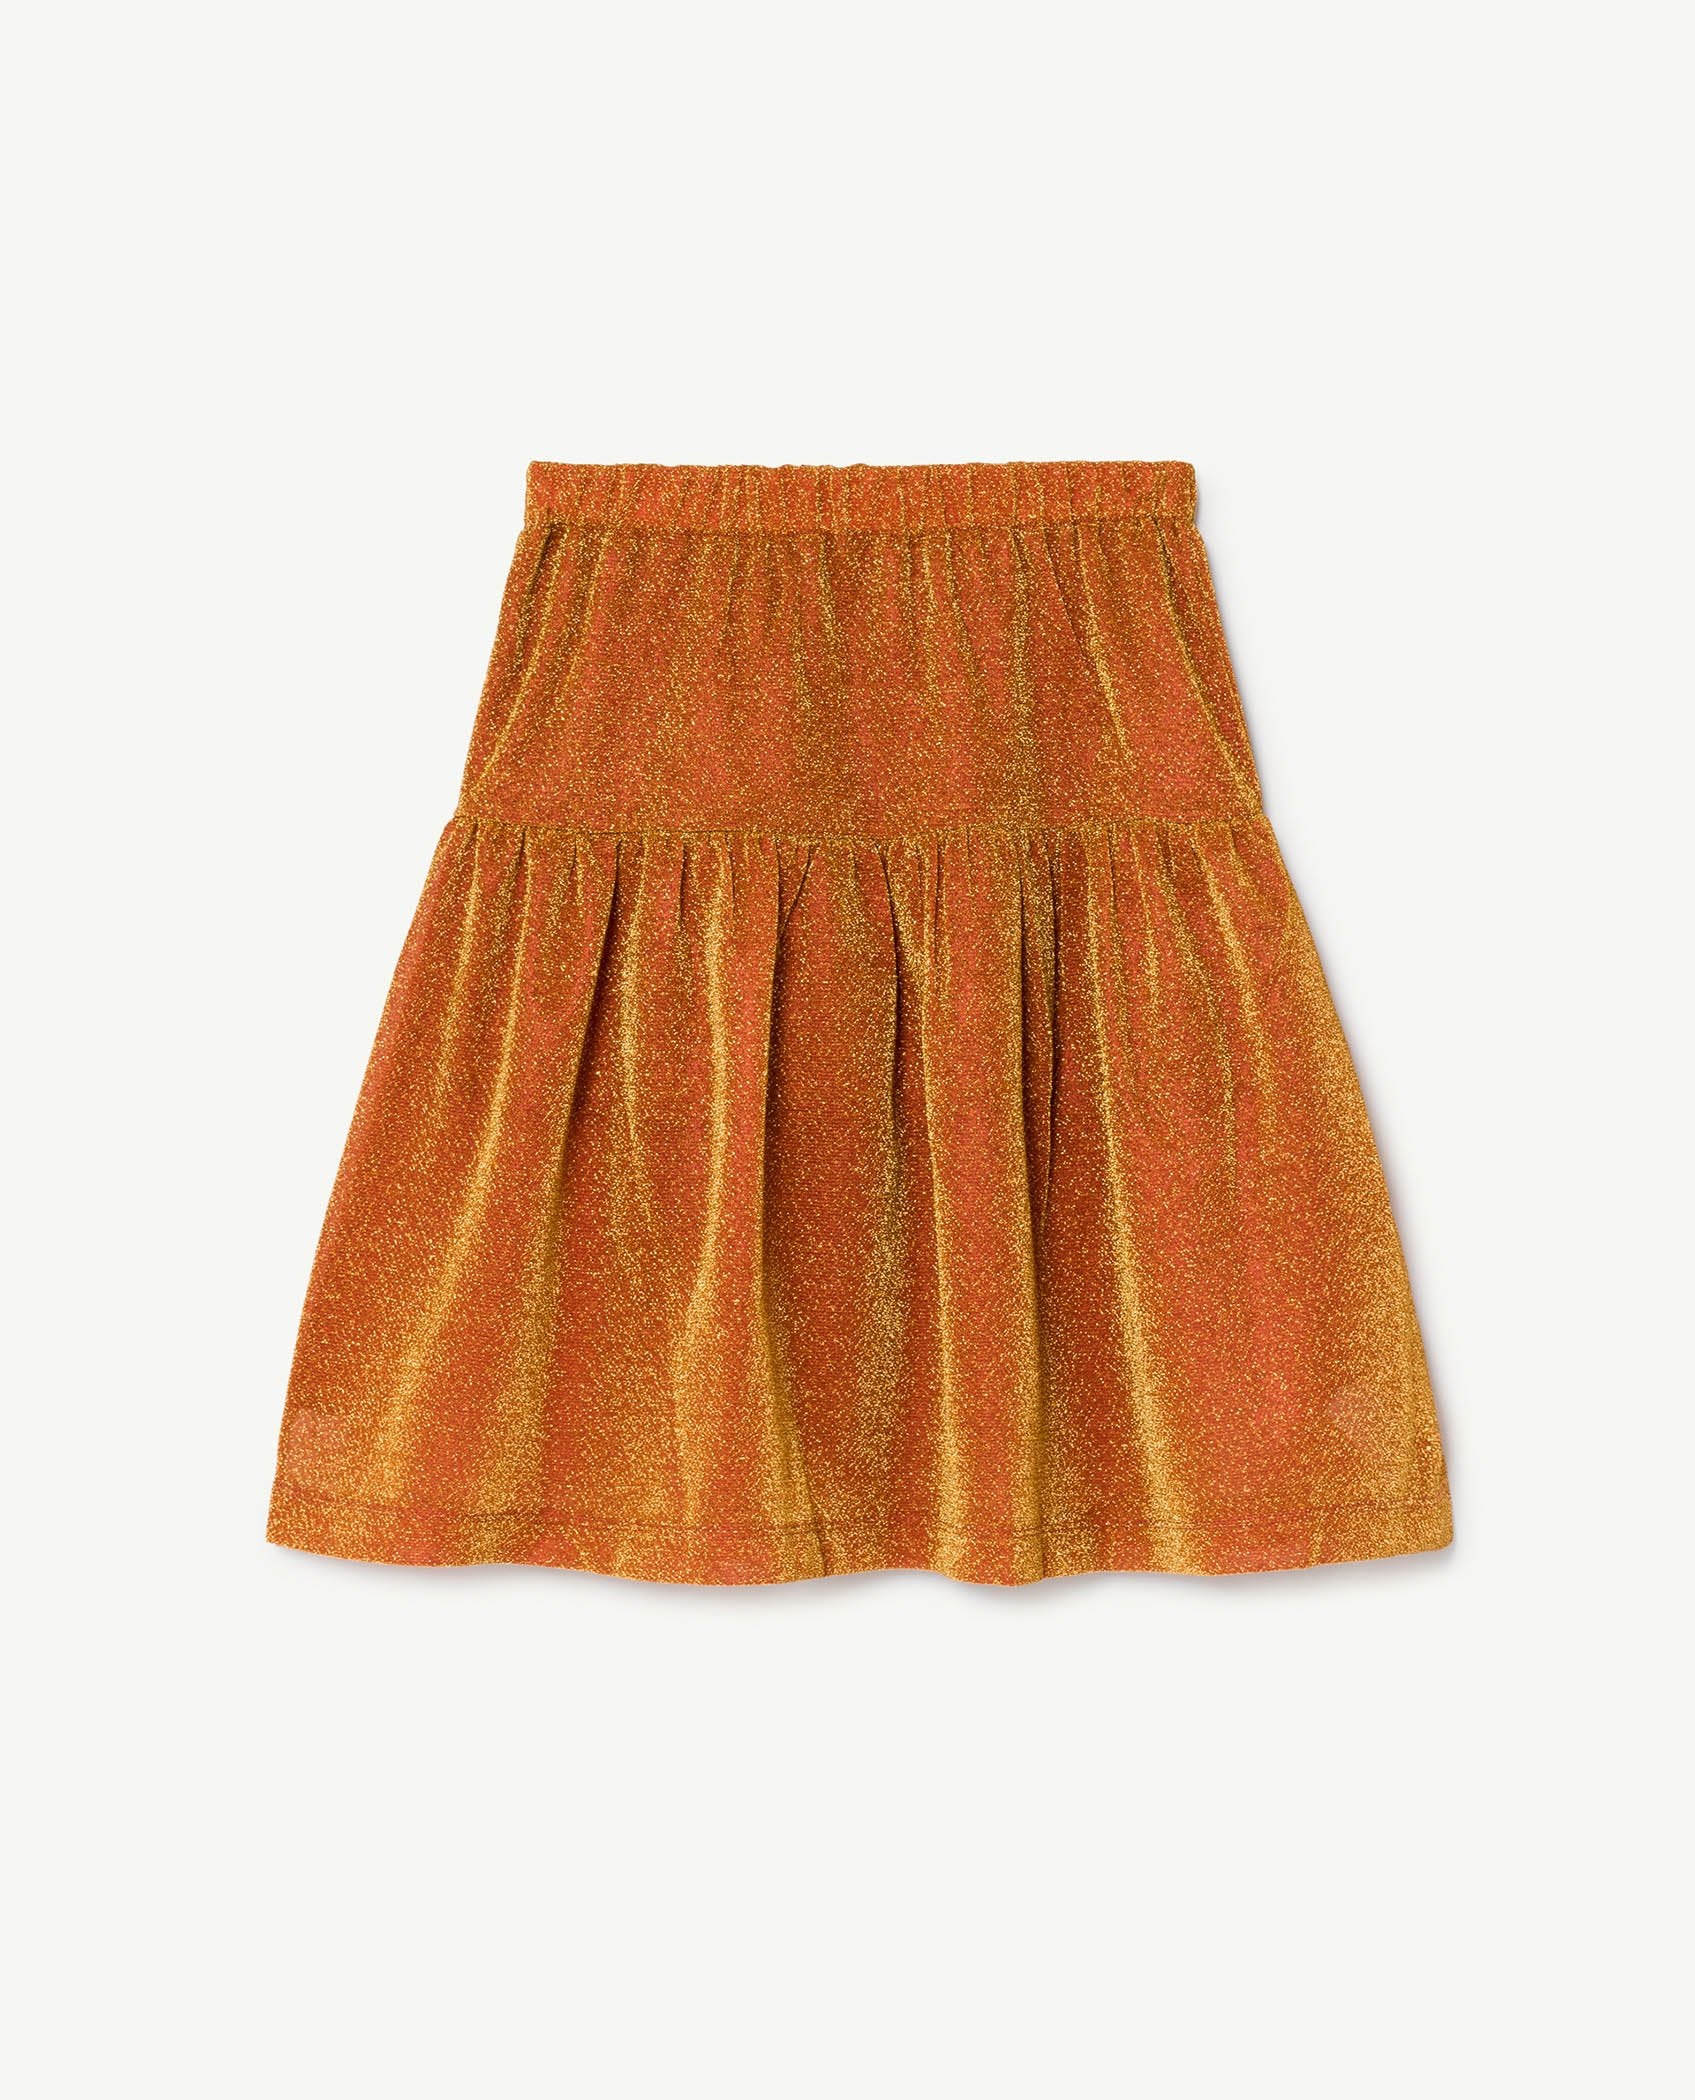 Orange Turkey Skirt PRODUCT BACK